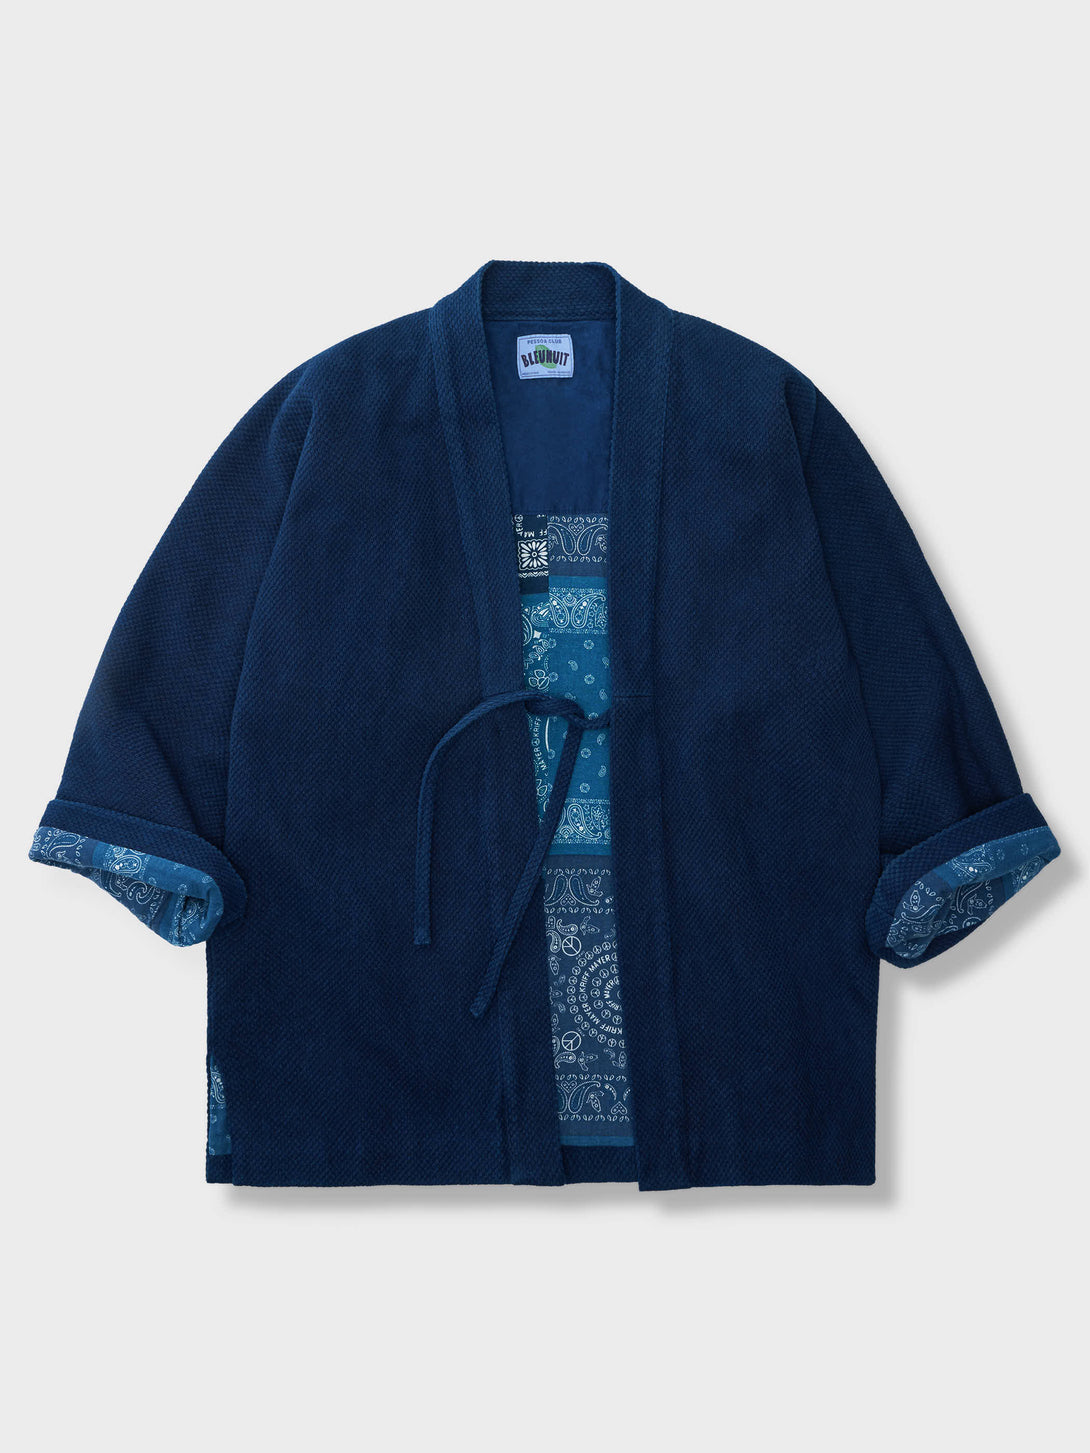 和の雰囲気を詰め込んだスペシャル藍染半纏、裏返すとバンダナ柄が特徴的な西海岸風のデザイン